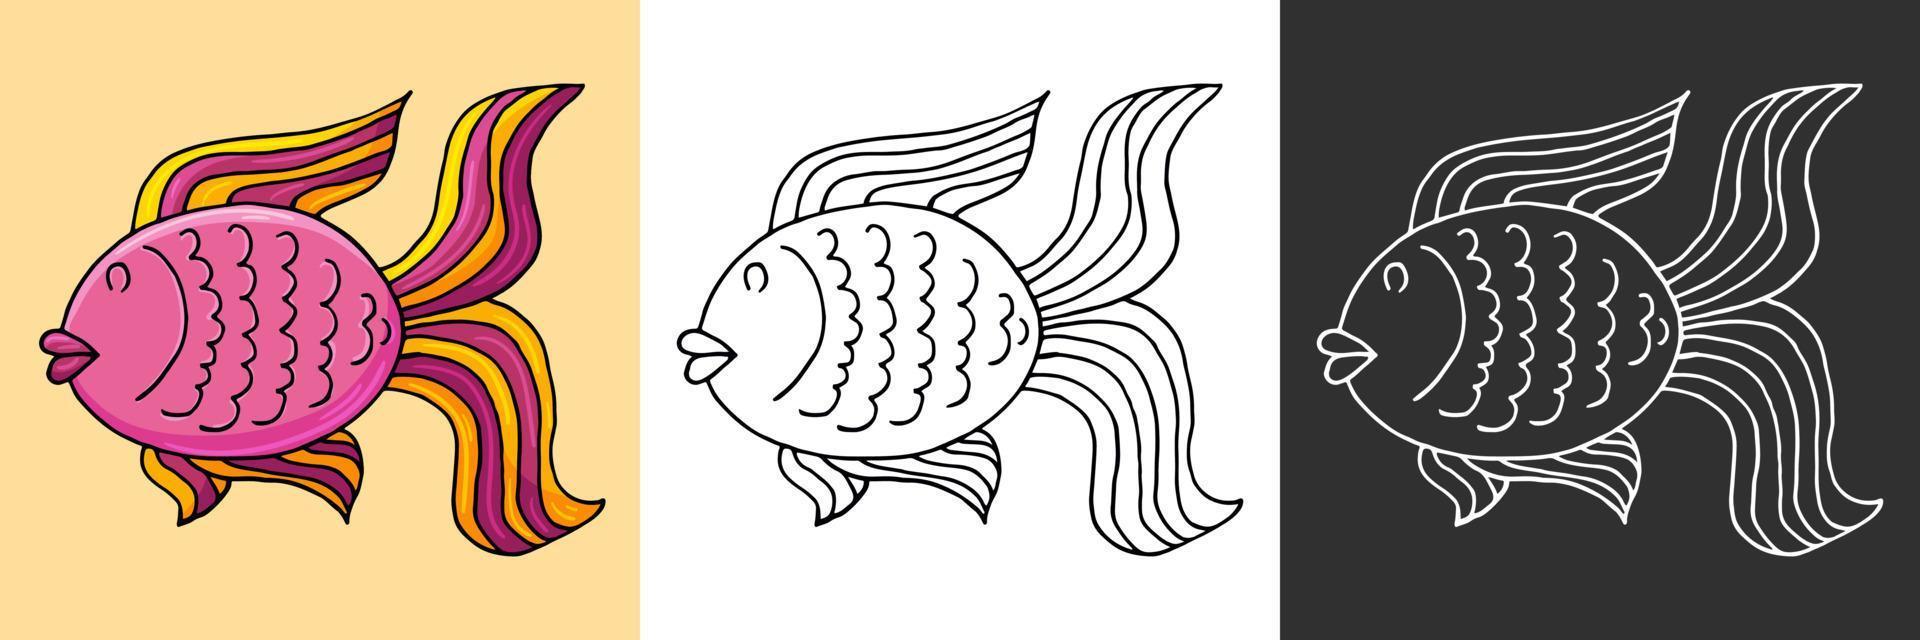 Symbol im Handzeichnungsstil. Liner-Abbildung. Sammlung von Zeichnungen zum Thema Marine vektor